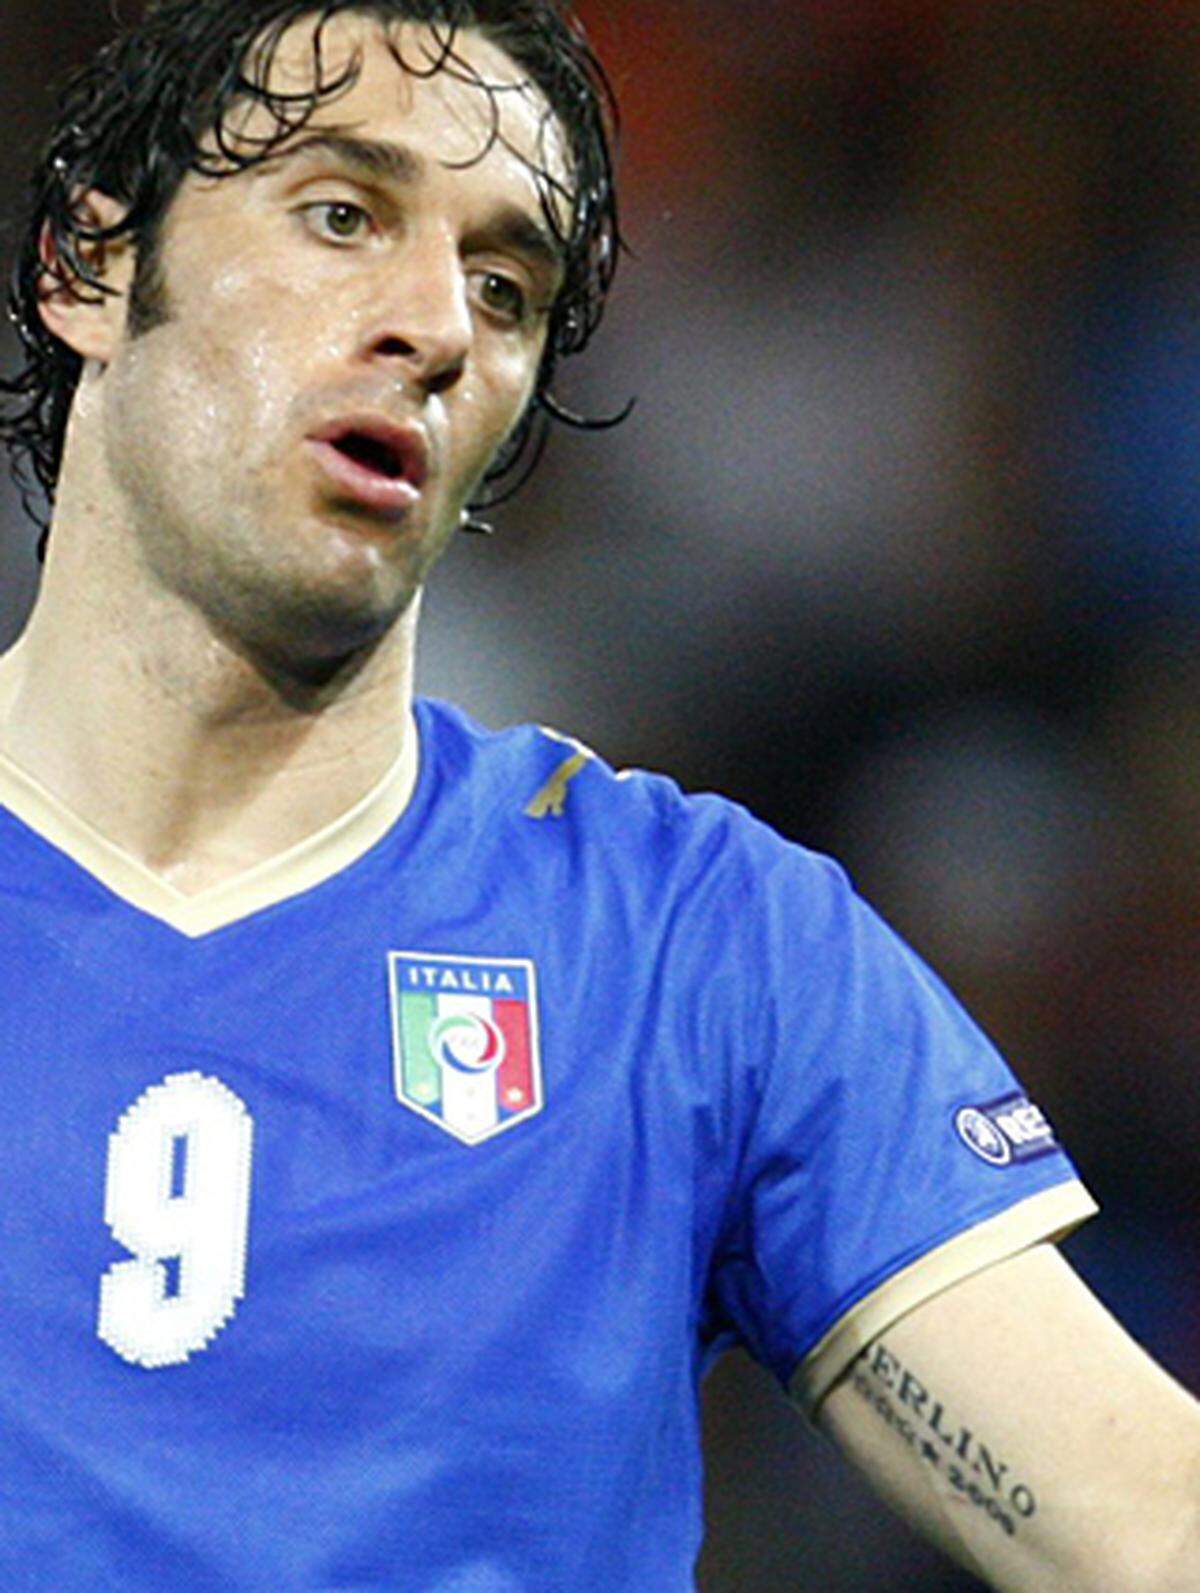 Vier mal wurde Italien Weltmeister, in Berlin 2006 war auch Luca Toni am Sieg beteiligt. Obwohl er den WM-Titel 2006 ganz bestimmt nie vergessen wird, hat er sich Datum und Ort des Erfolges zur Sicherheit auf den linken Oberarm tätowieren lassen.